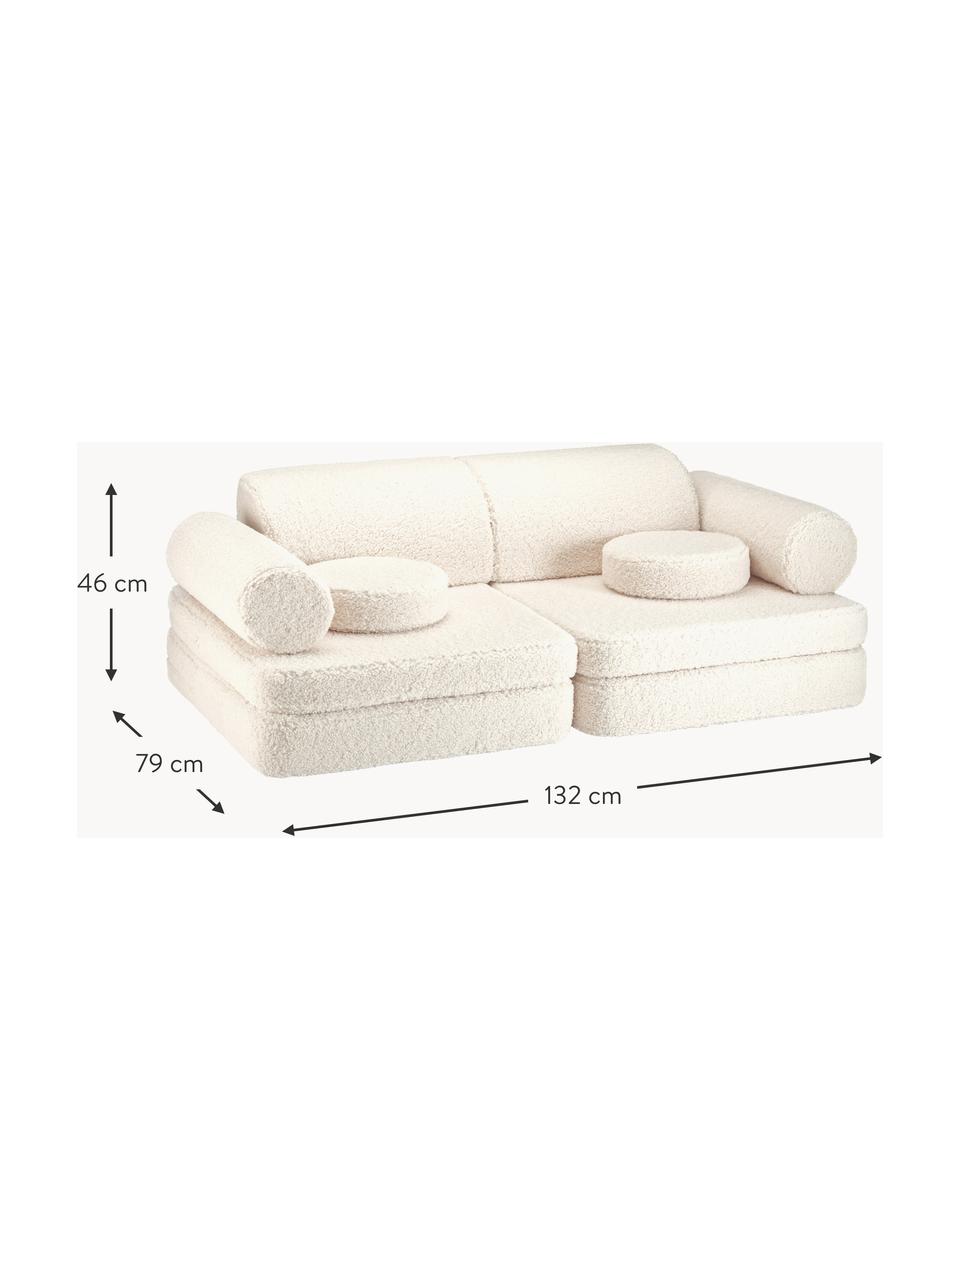 Ręcznie wykonana sofa dziecięca Teddy Sugar, Tapicerka: Teddy (100% poliester), Teddy w odcieniu złamanej bieli, S 132 x G 79 cm